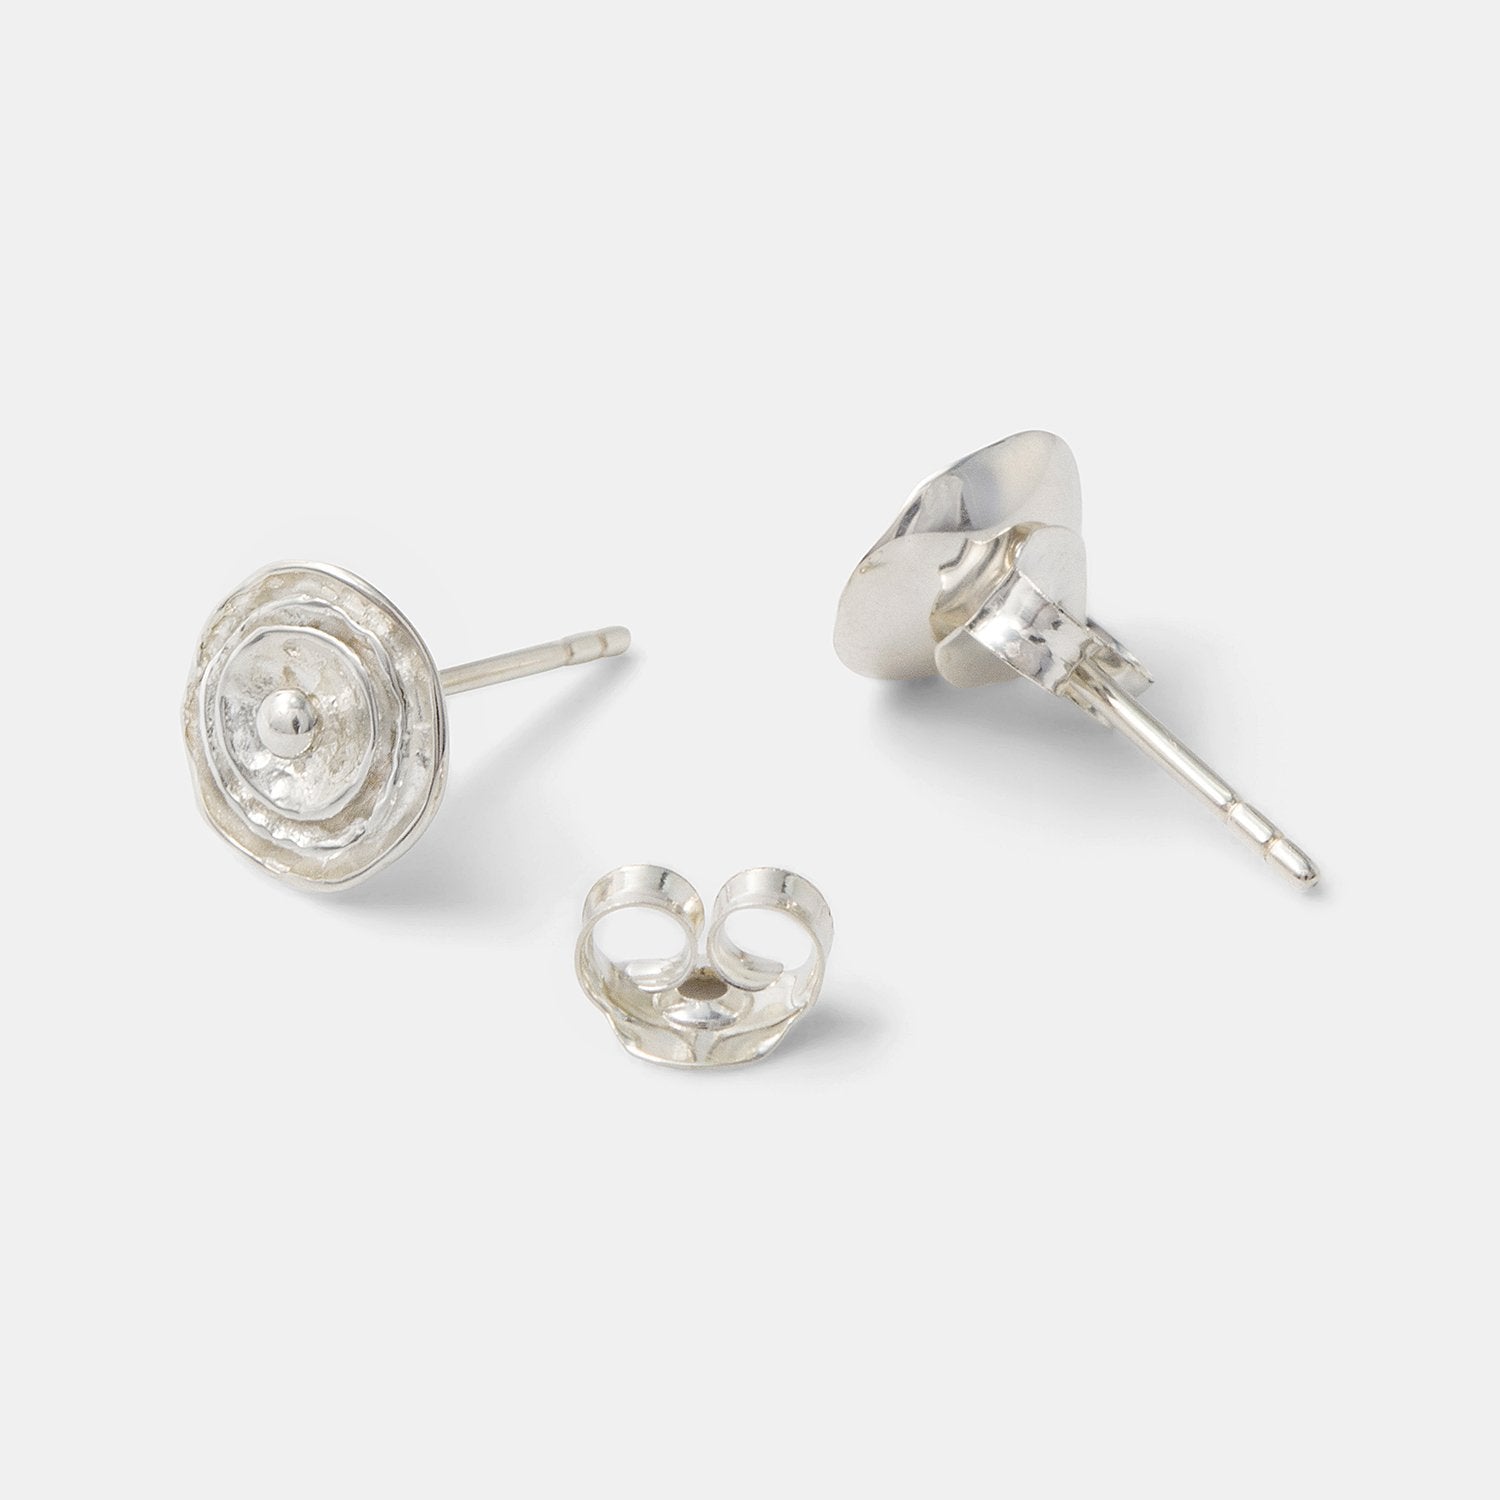 Rose earrings: silver - Simone Walsh Jewellery Australia